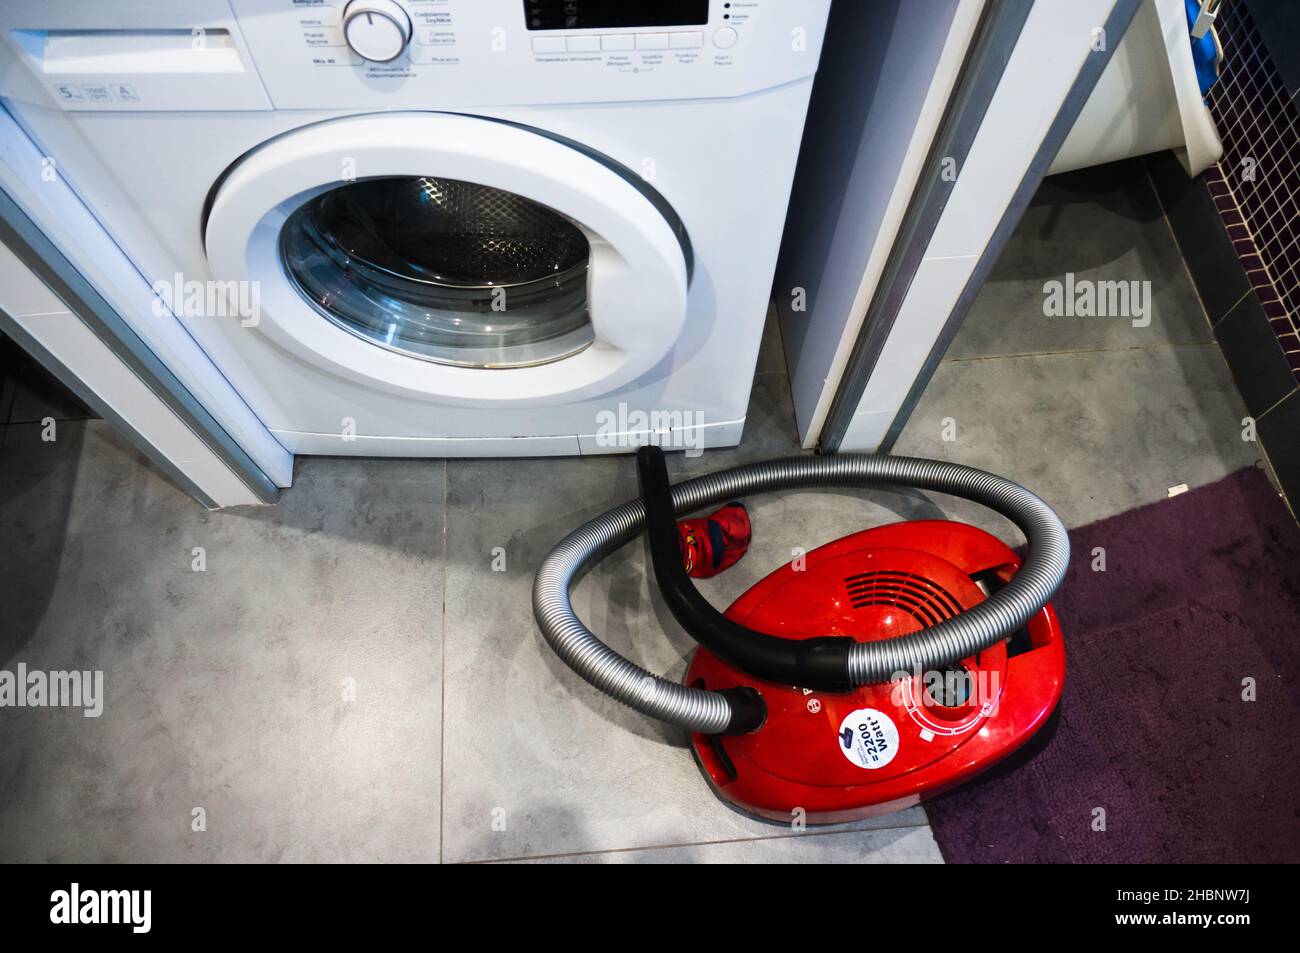 POZNAN, POLEN - 10. Mai 2019: Draufsicht auf einen roten Bosch-Staubsauger neben einer Waschmaschine der Marke Beko Stockfoto